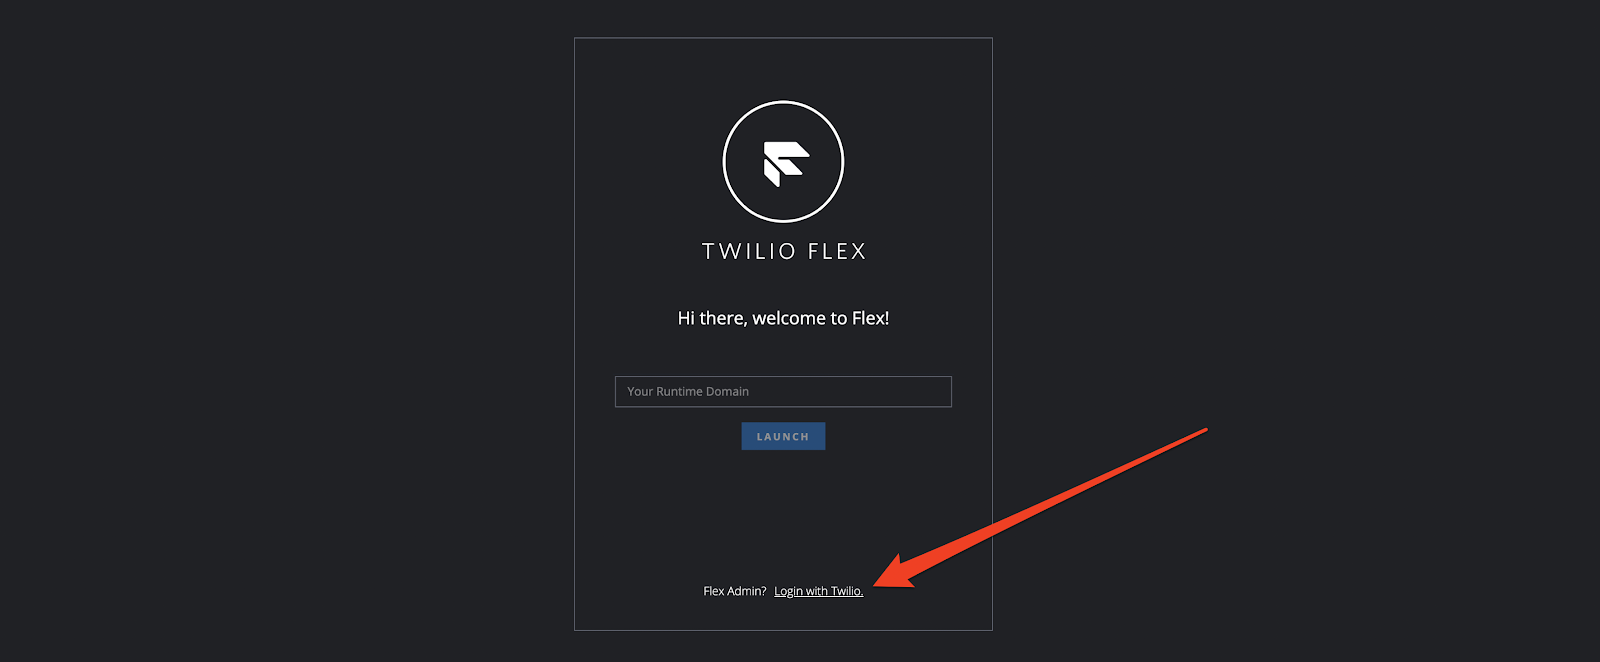 Screenshot showing how to Login with Twilio when you launch Flex